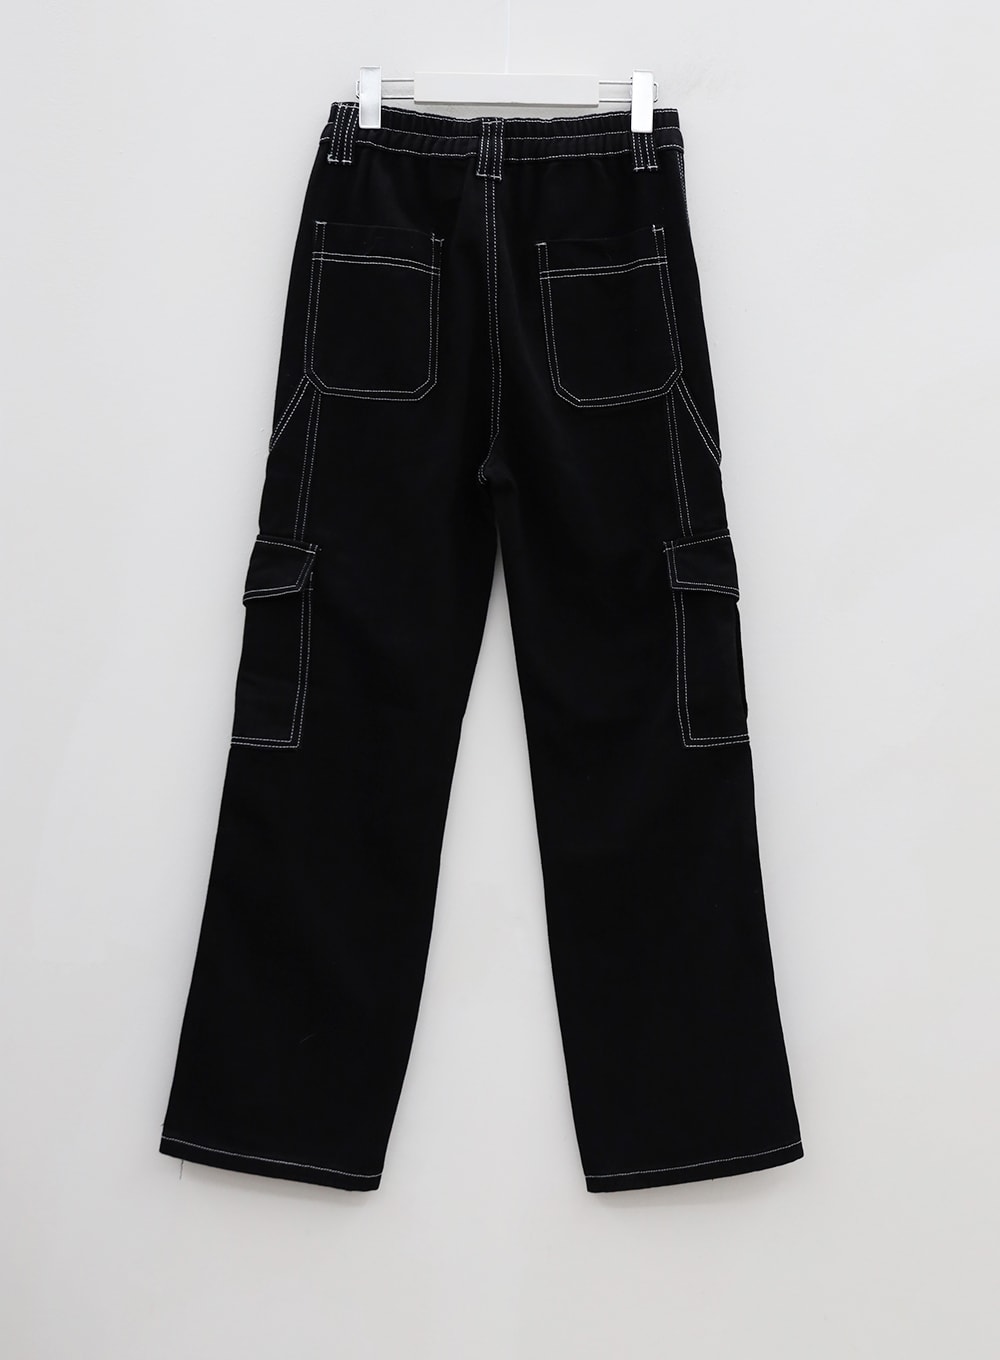 Stitch Detail Black Cotton Pants BU14 - Lewkin